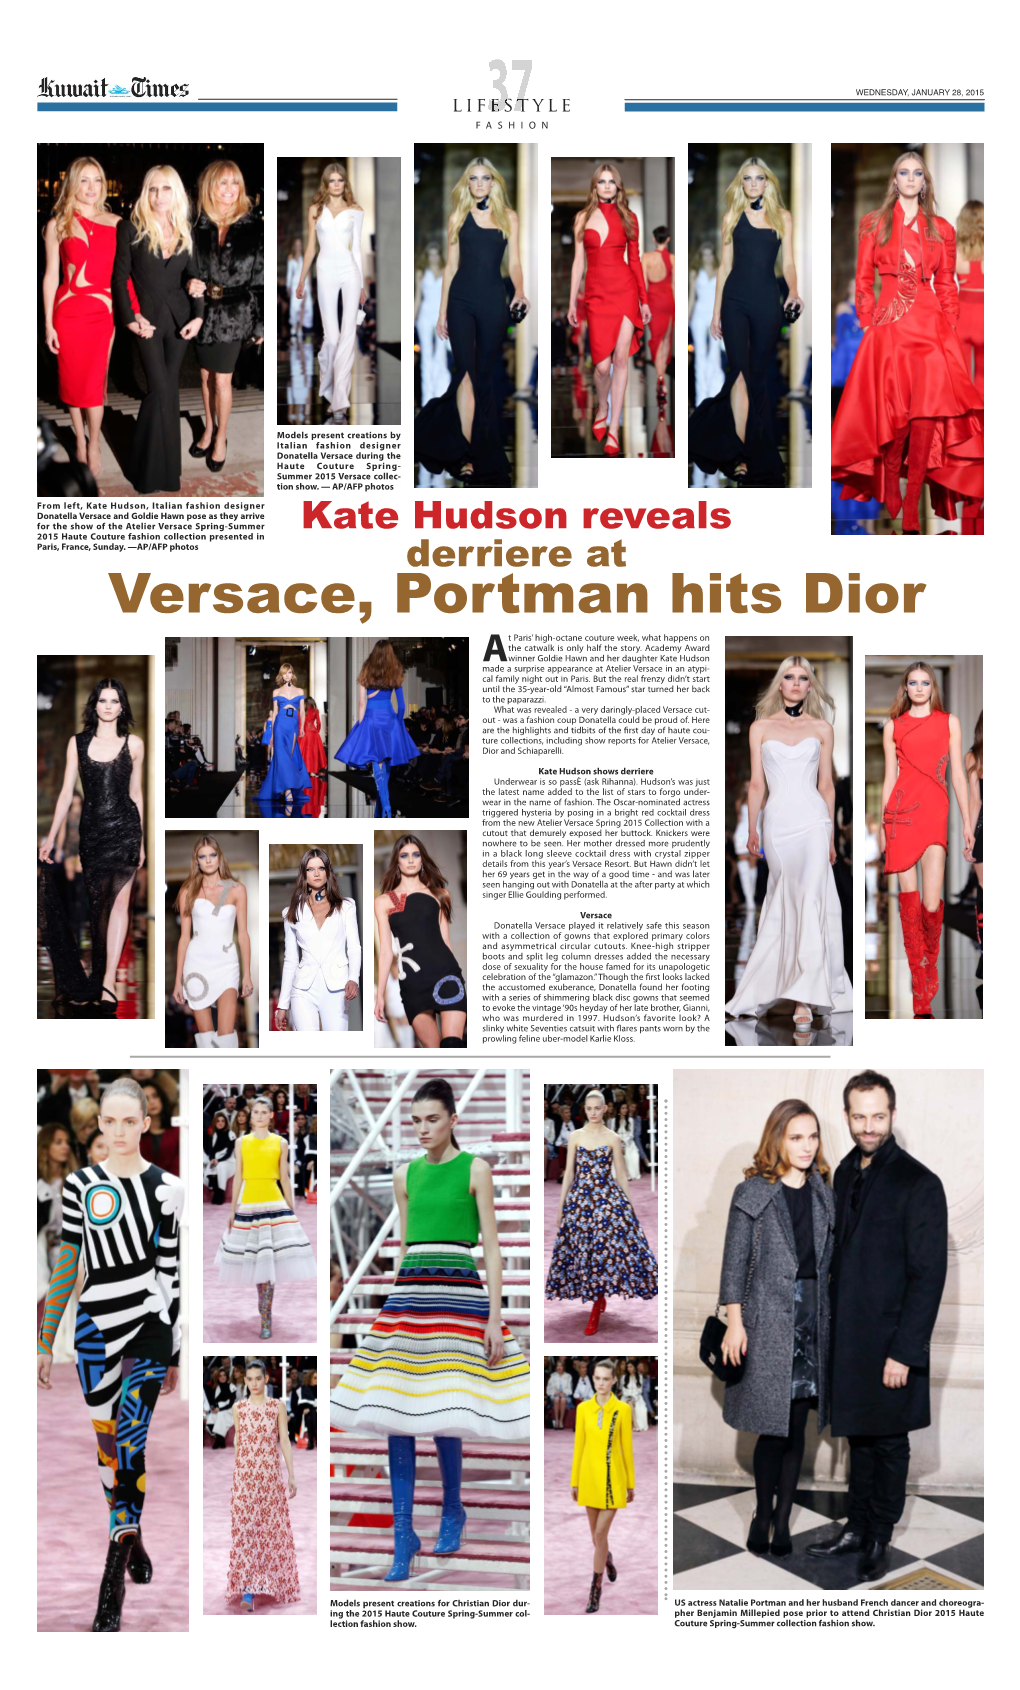 Versace, Portman Hits Dior